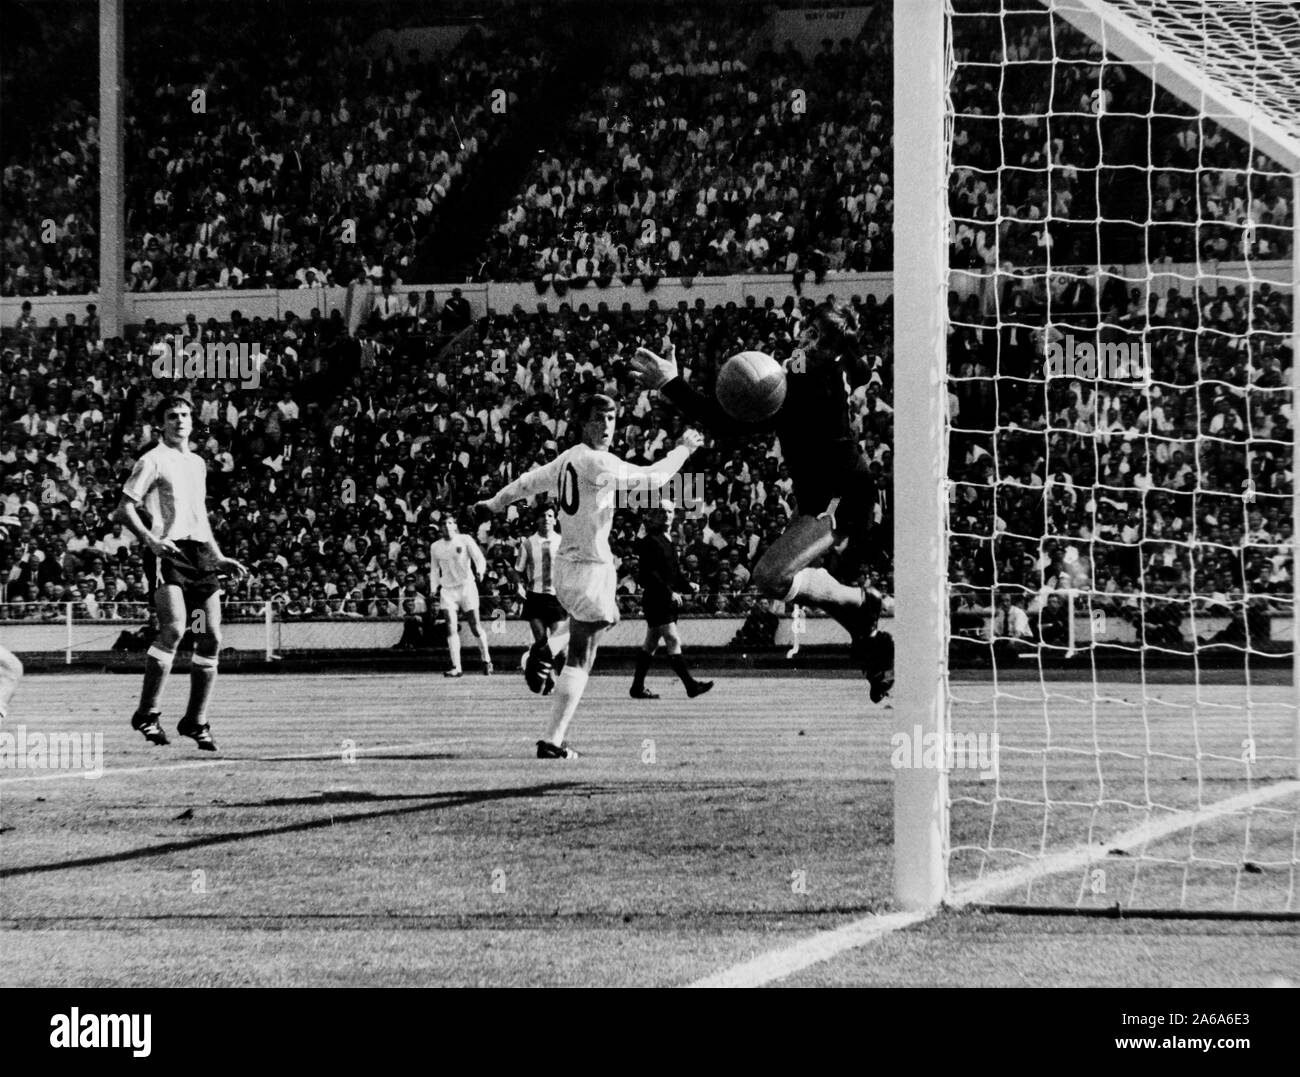 England-Argentina, Wembley, 1966 Stock Photo